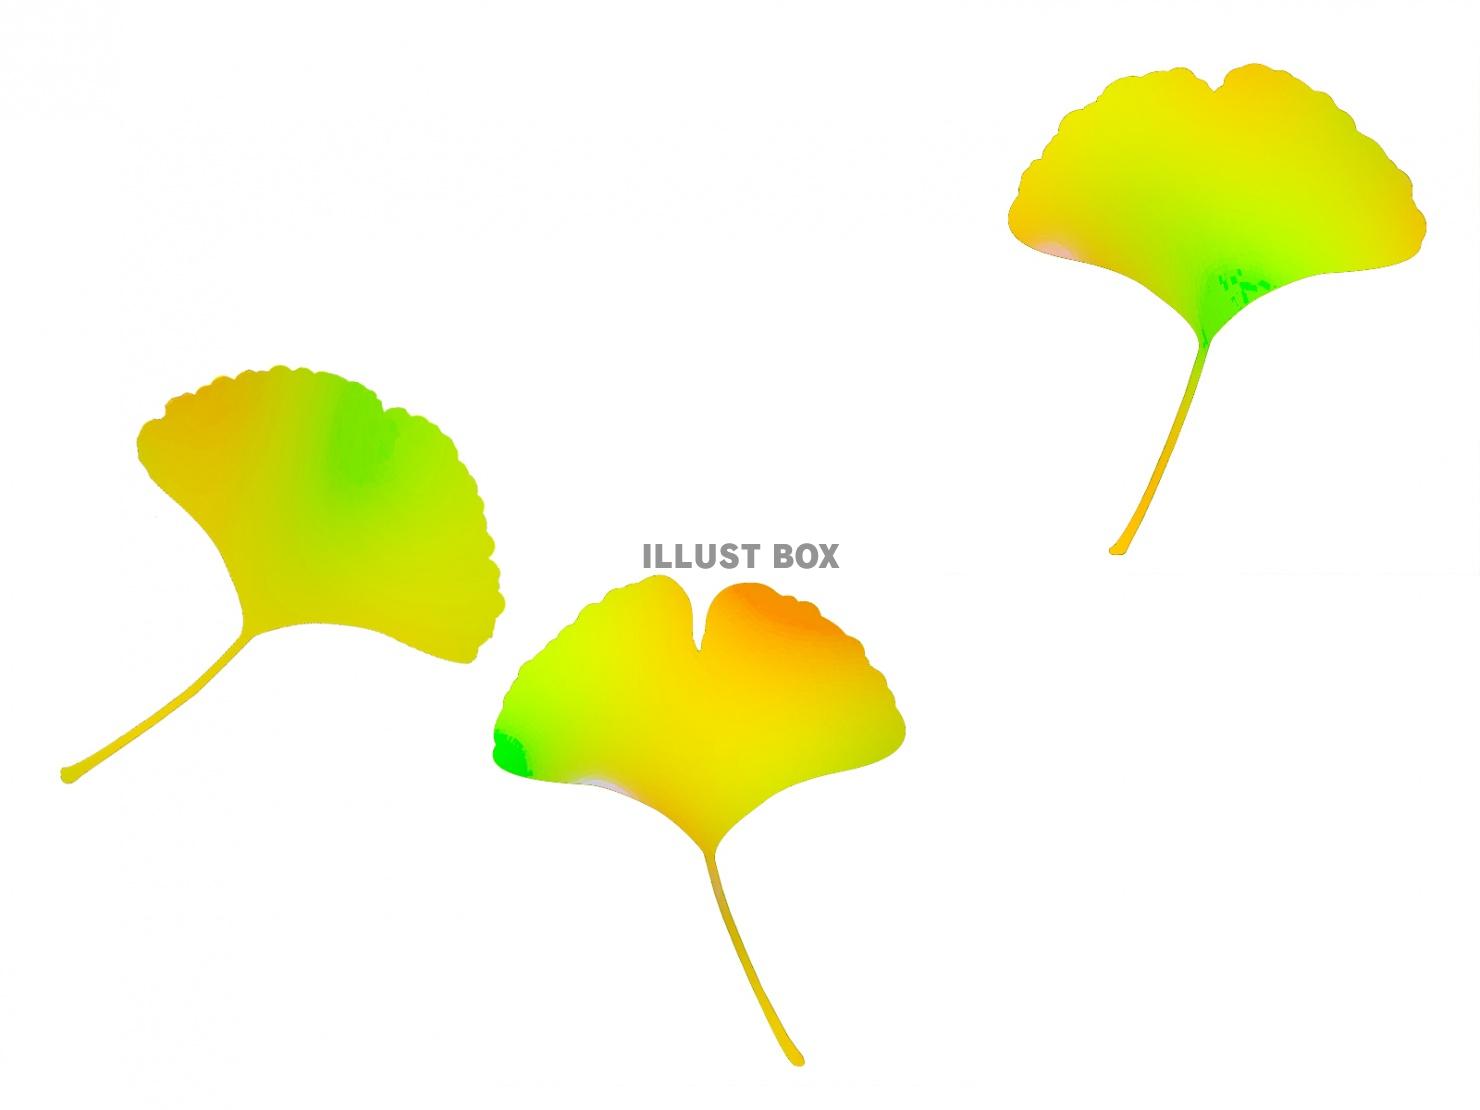 銀杏の葉っぱ壁紙シンプル背景素材イラスト